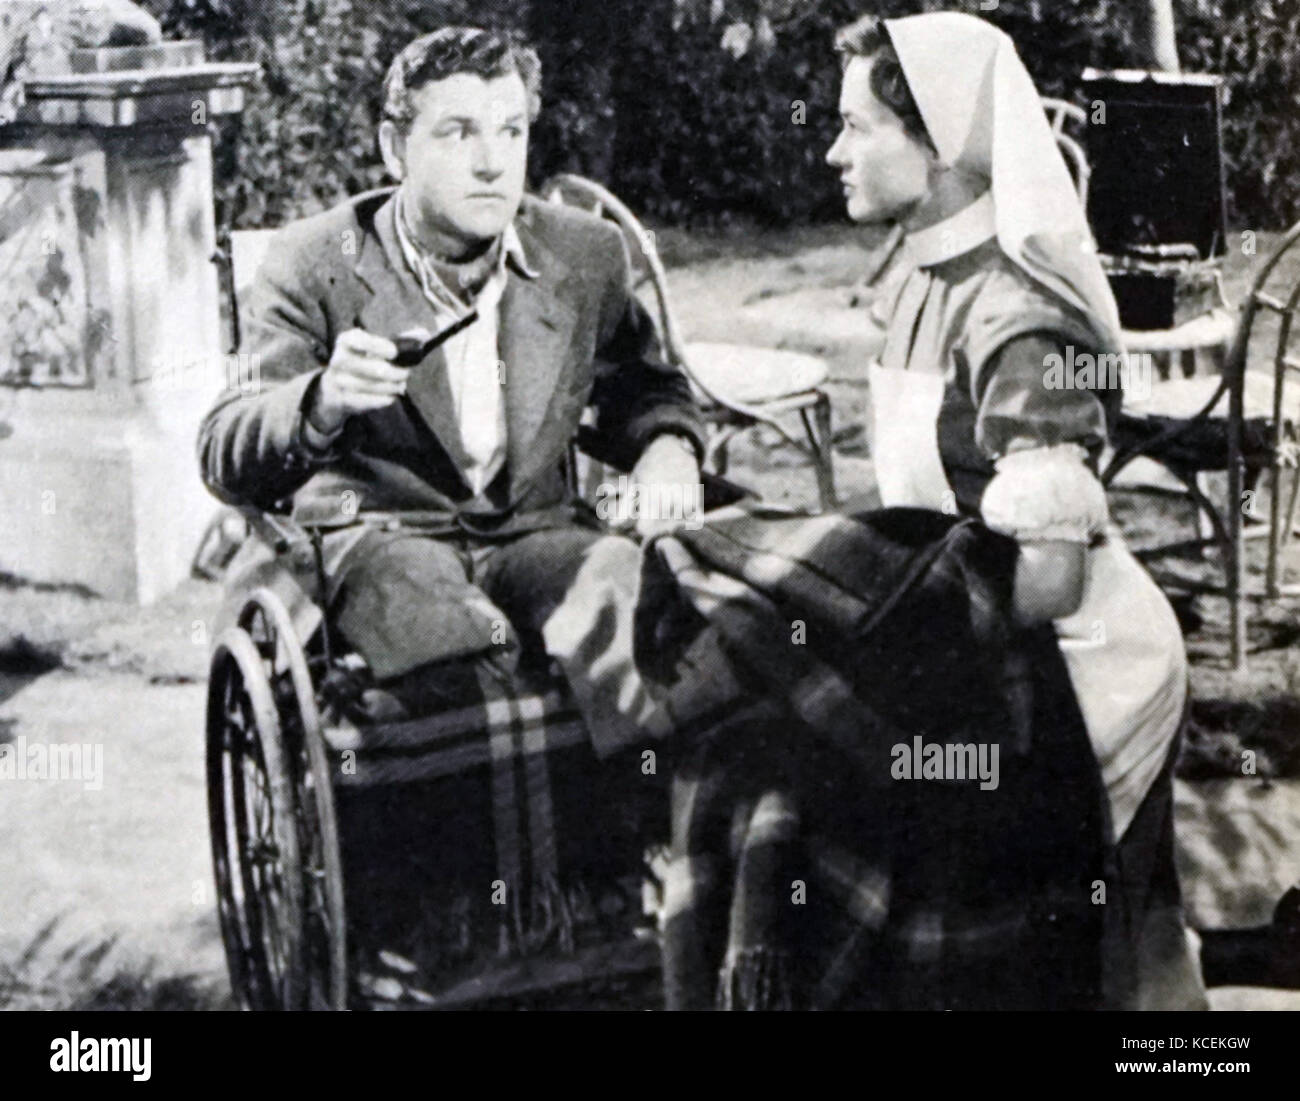 Szenenfoto aus "Reach für die Sky' starring Kenneth Mehr (1914-1982) einen englischen Film- und Theaterschauspieler und Dorothy Alison (1925-1992) eine australische Bühnen-, Film- und Fernsehschauspielerin. Vom 20. Jahrhundert Stockfoto